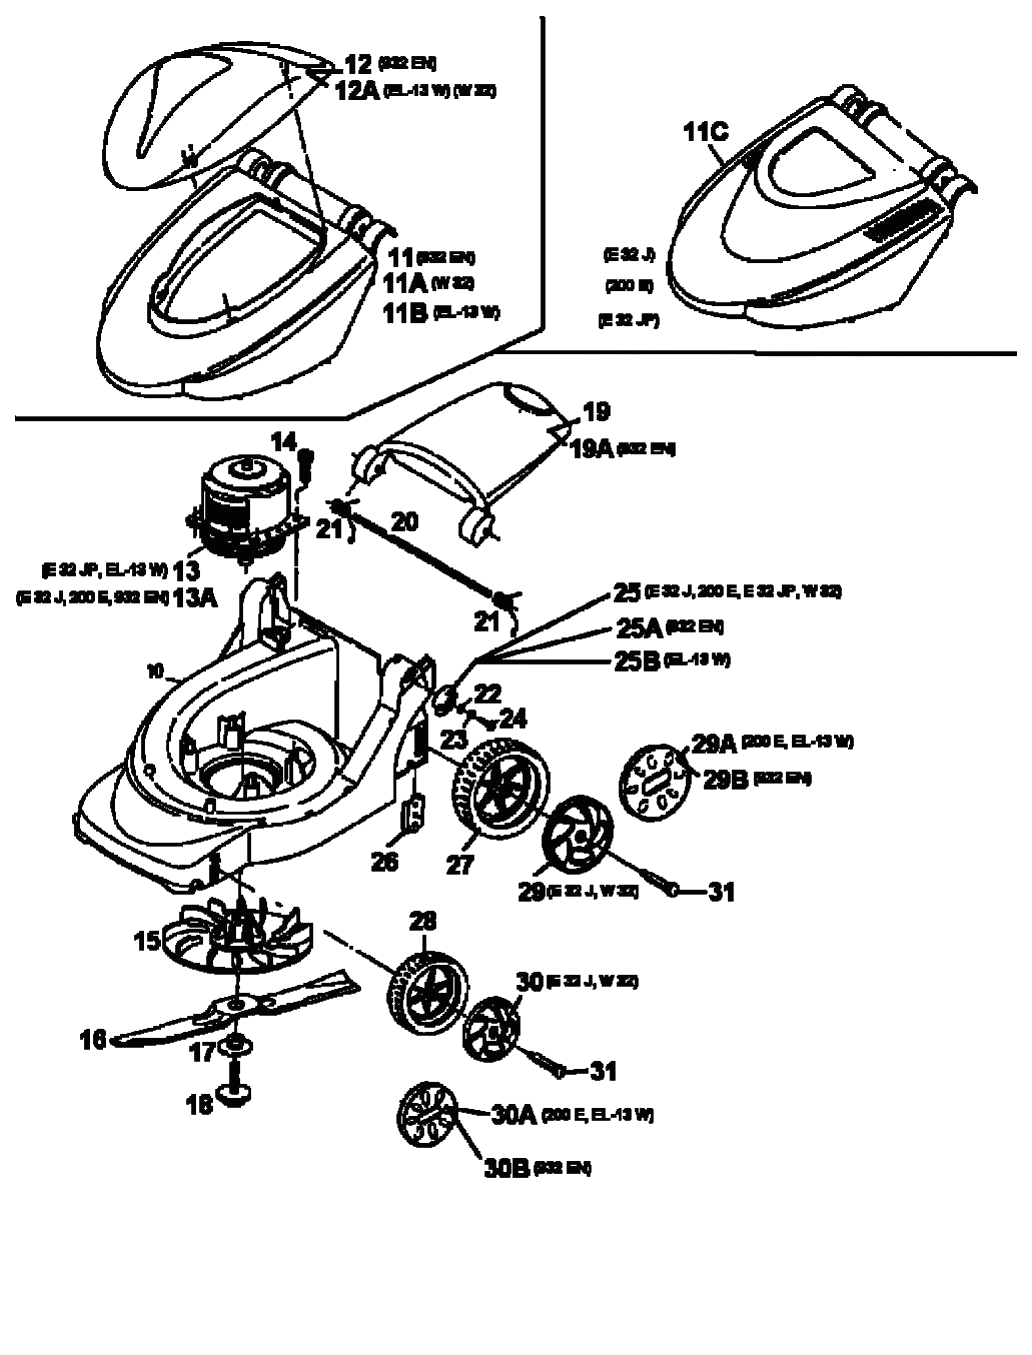 MTD Артикул 18A-C0C-678 (год выпуска 1998). Электромотор, ножи, колеса